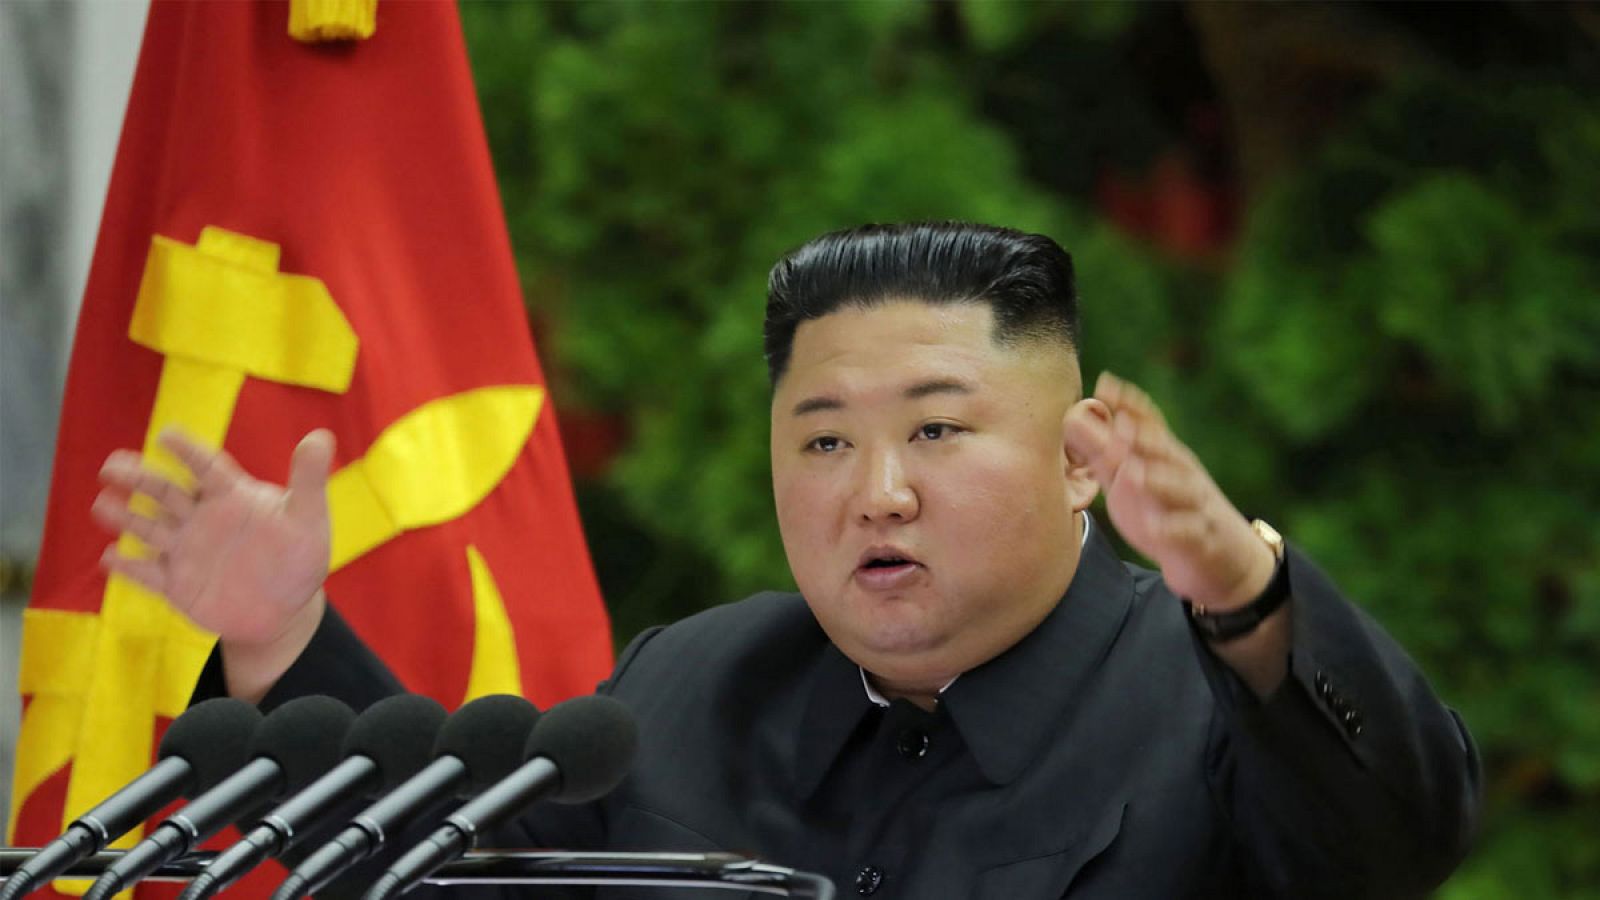 El líder norcoreano Kim Jong-un presidiendo el Comité Central del Partido del Trabajo.